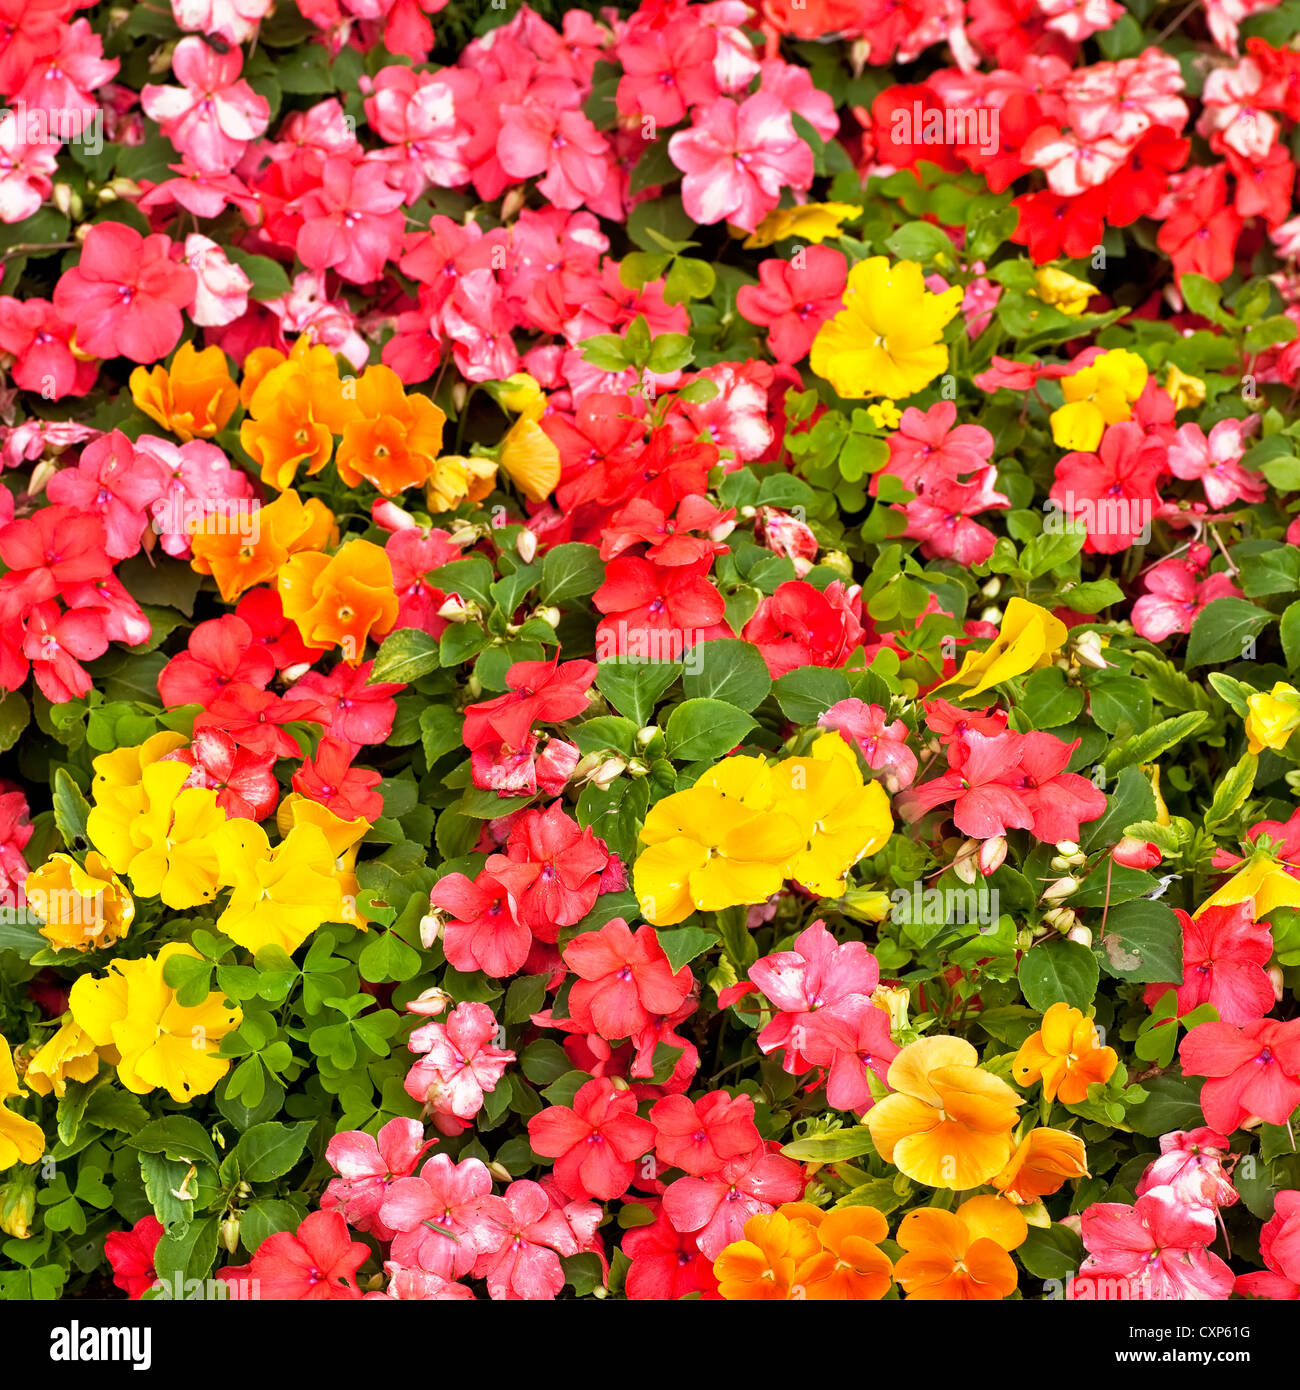 Impatiens naranja y amarillo - flores en un jardín de flores de verano. Foto de stock